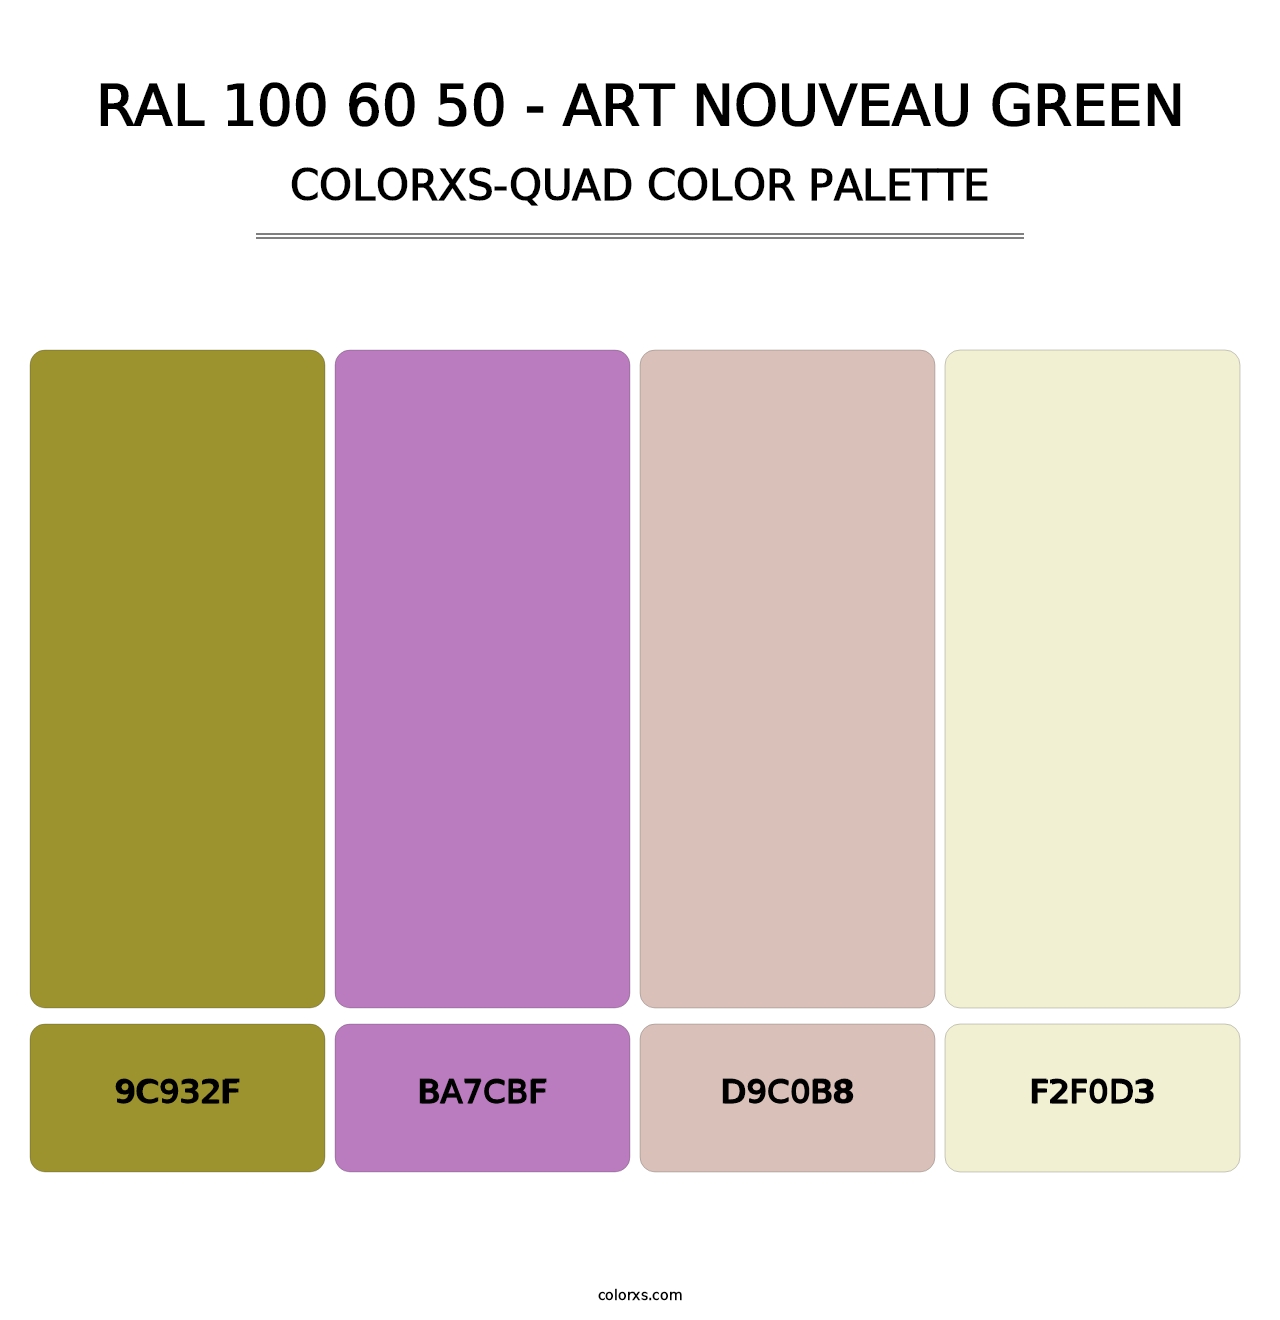 RAL 100 60 50 - Art Nouveau Green - Colorxs Quad Palette